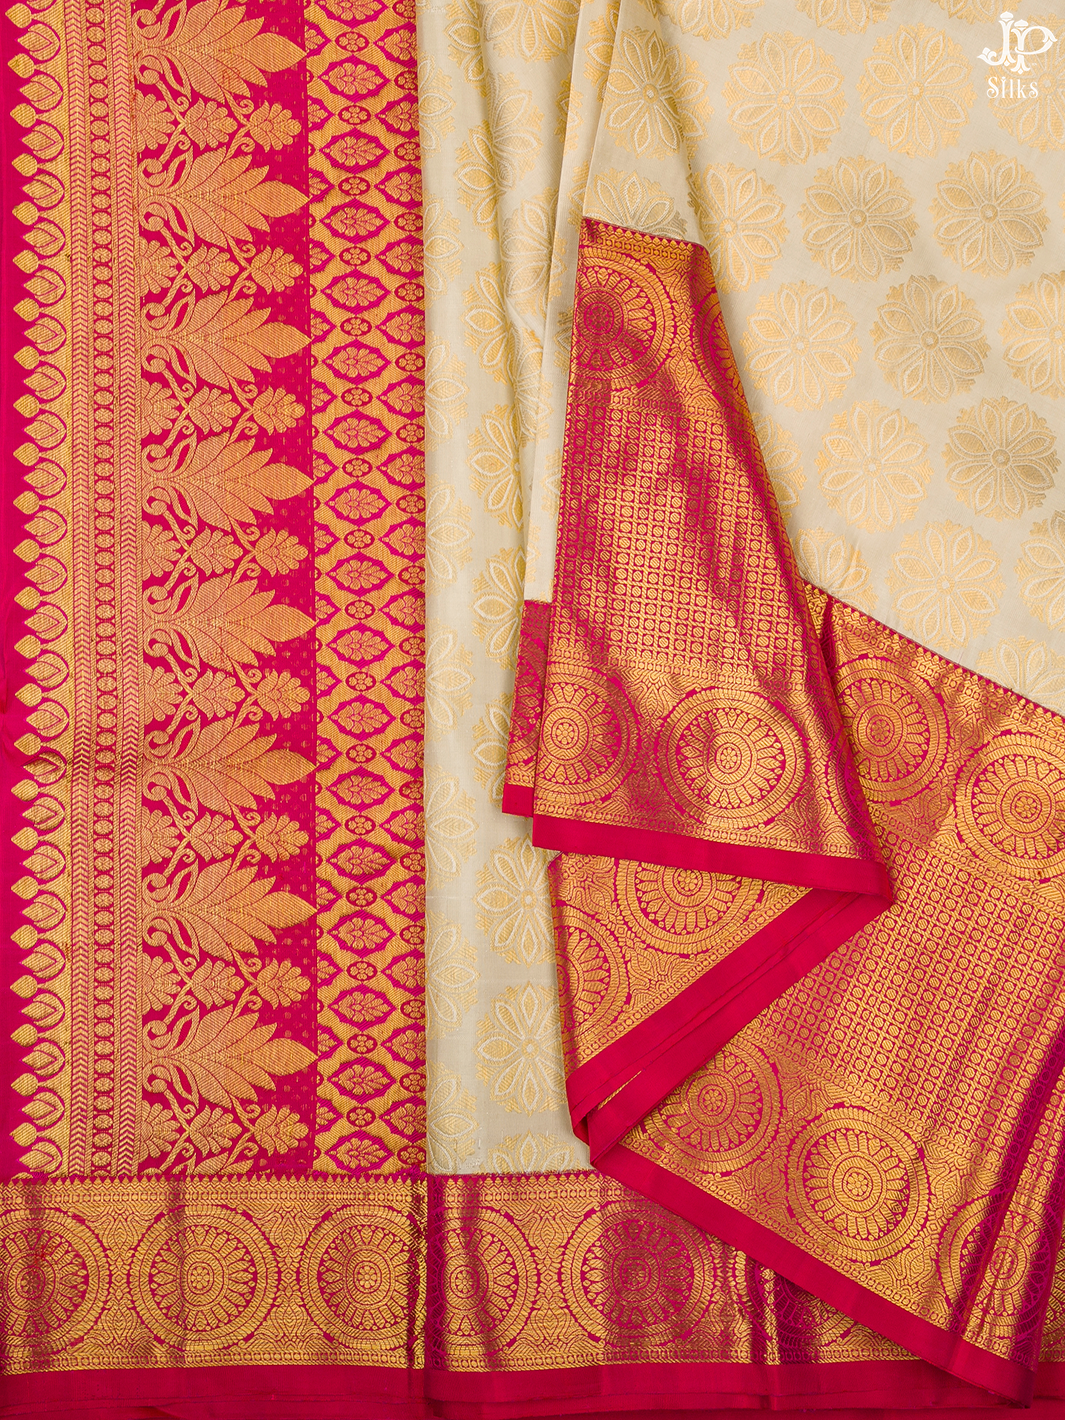 Cream and Pink Kanchipuram Silk Saree - A7237 - View 1 